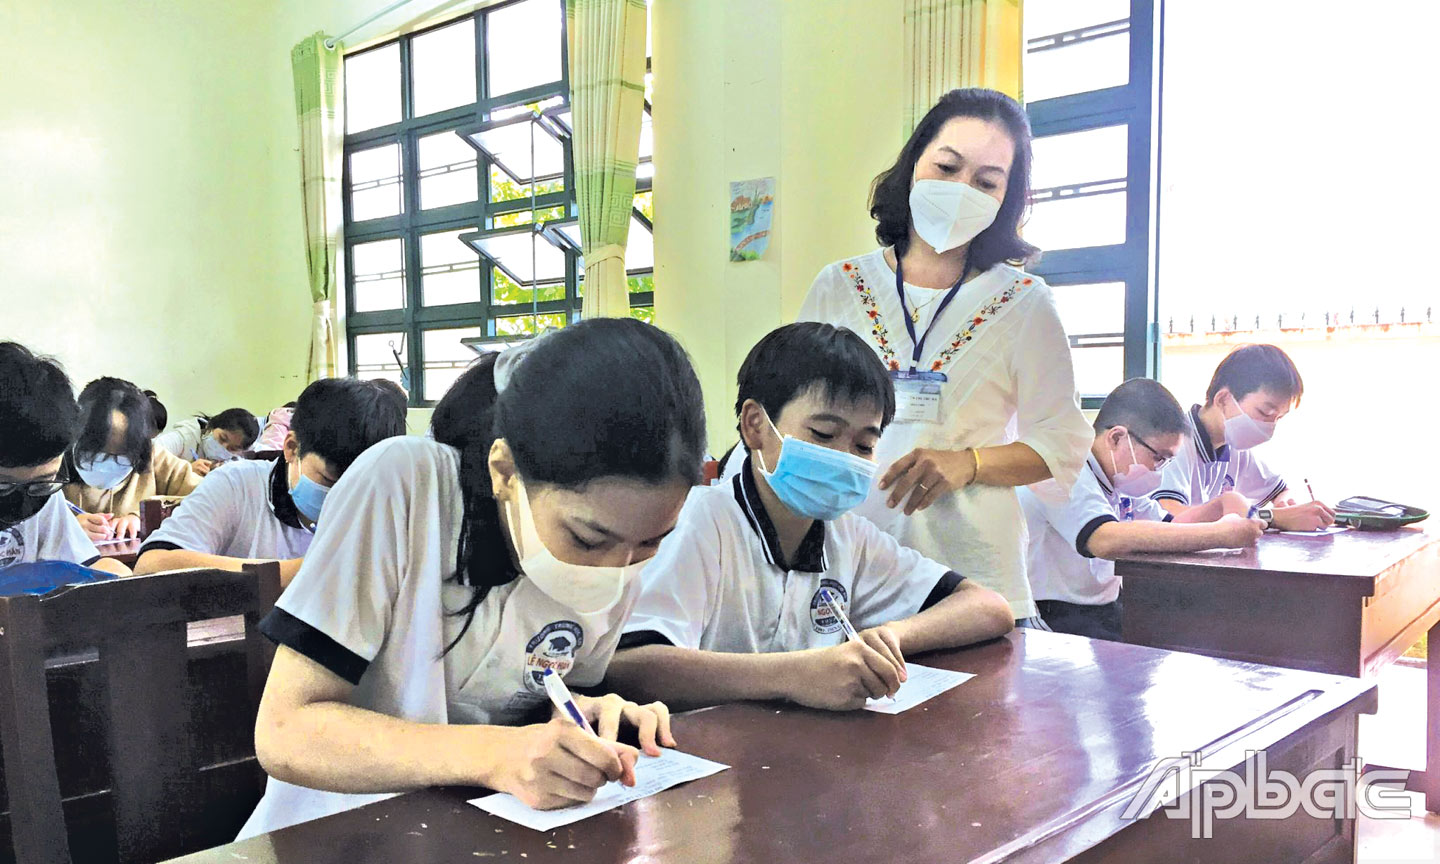 Tiền Giang cần tuyển dụng nguồn giáo viên đang thiếu ở các bậc học (ảnh chụp tại Trường THCS Lê Ngọc Hân, TP. Mỹ Tho). 